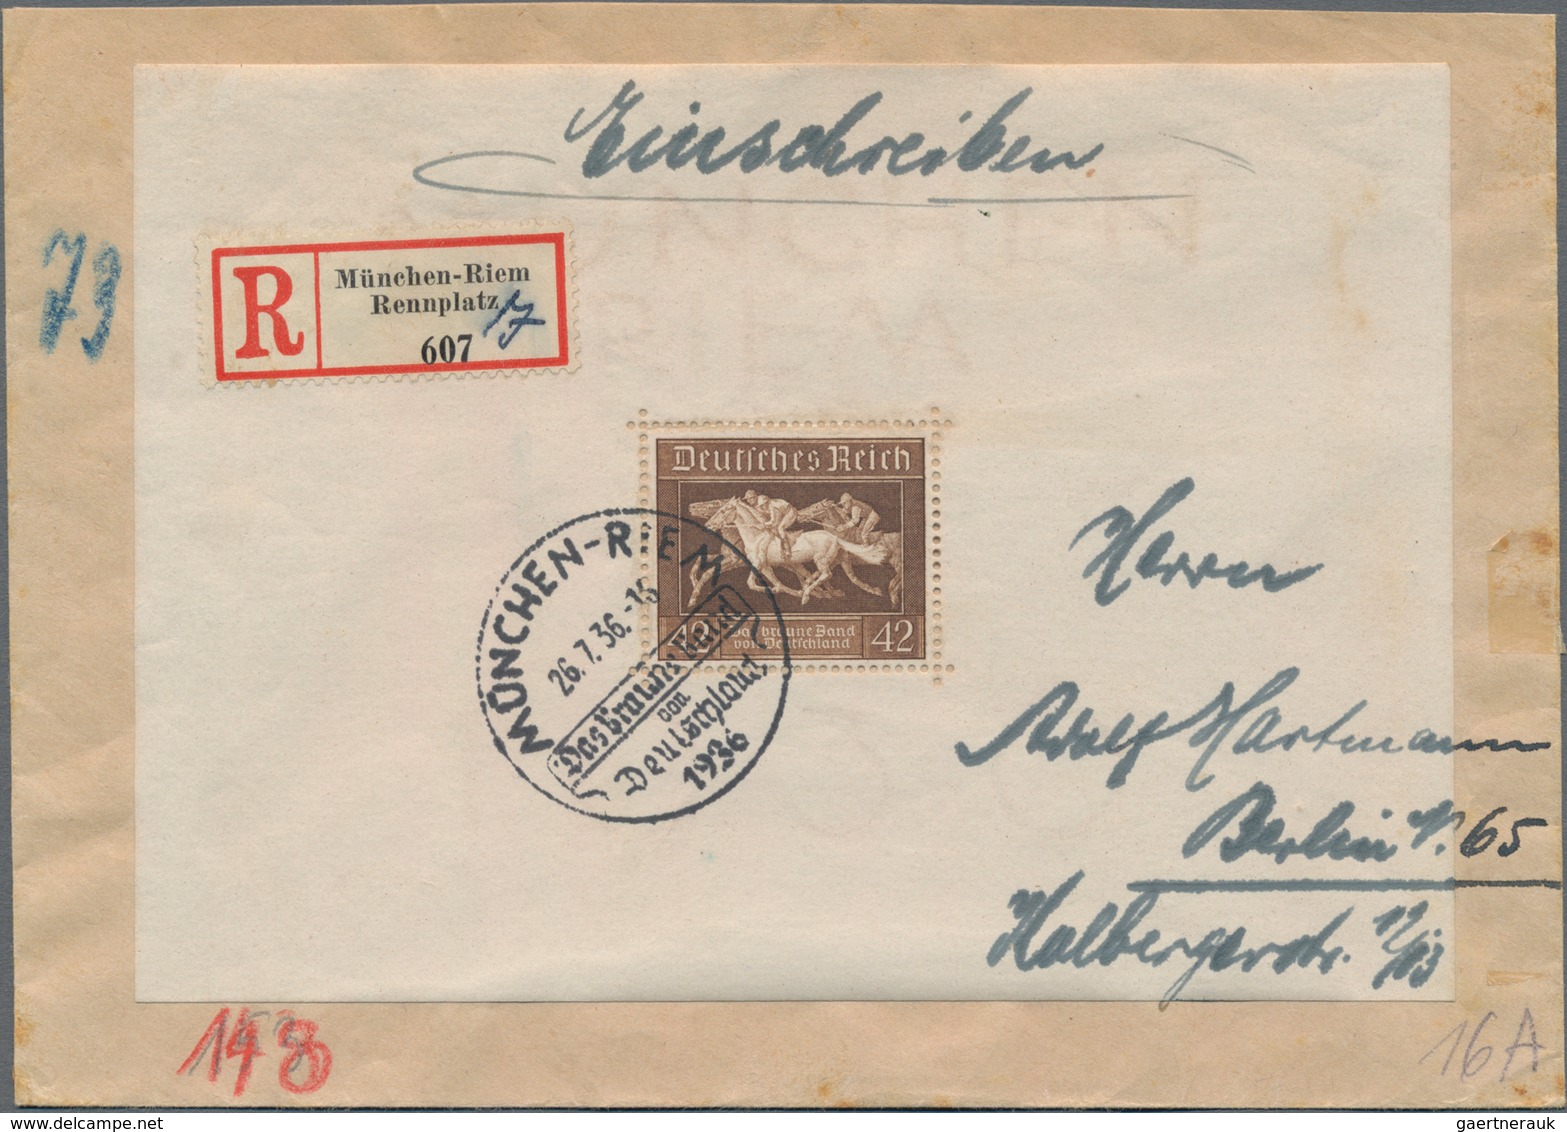 Deutsches Reich - 3. Reich: 1933-1945, ca. 350 Briefe, Karten, Paketkarten, Ganzsachen und Postkarte